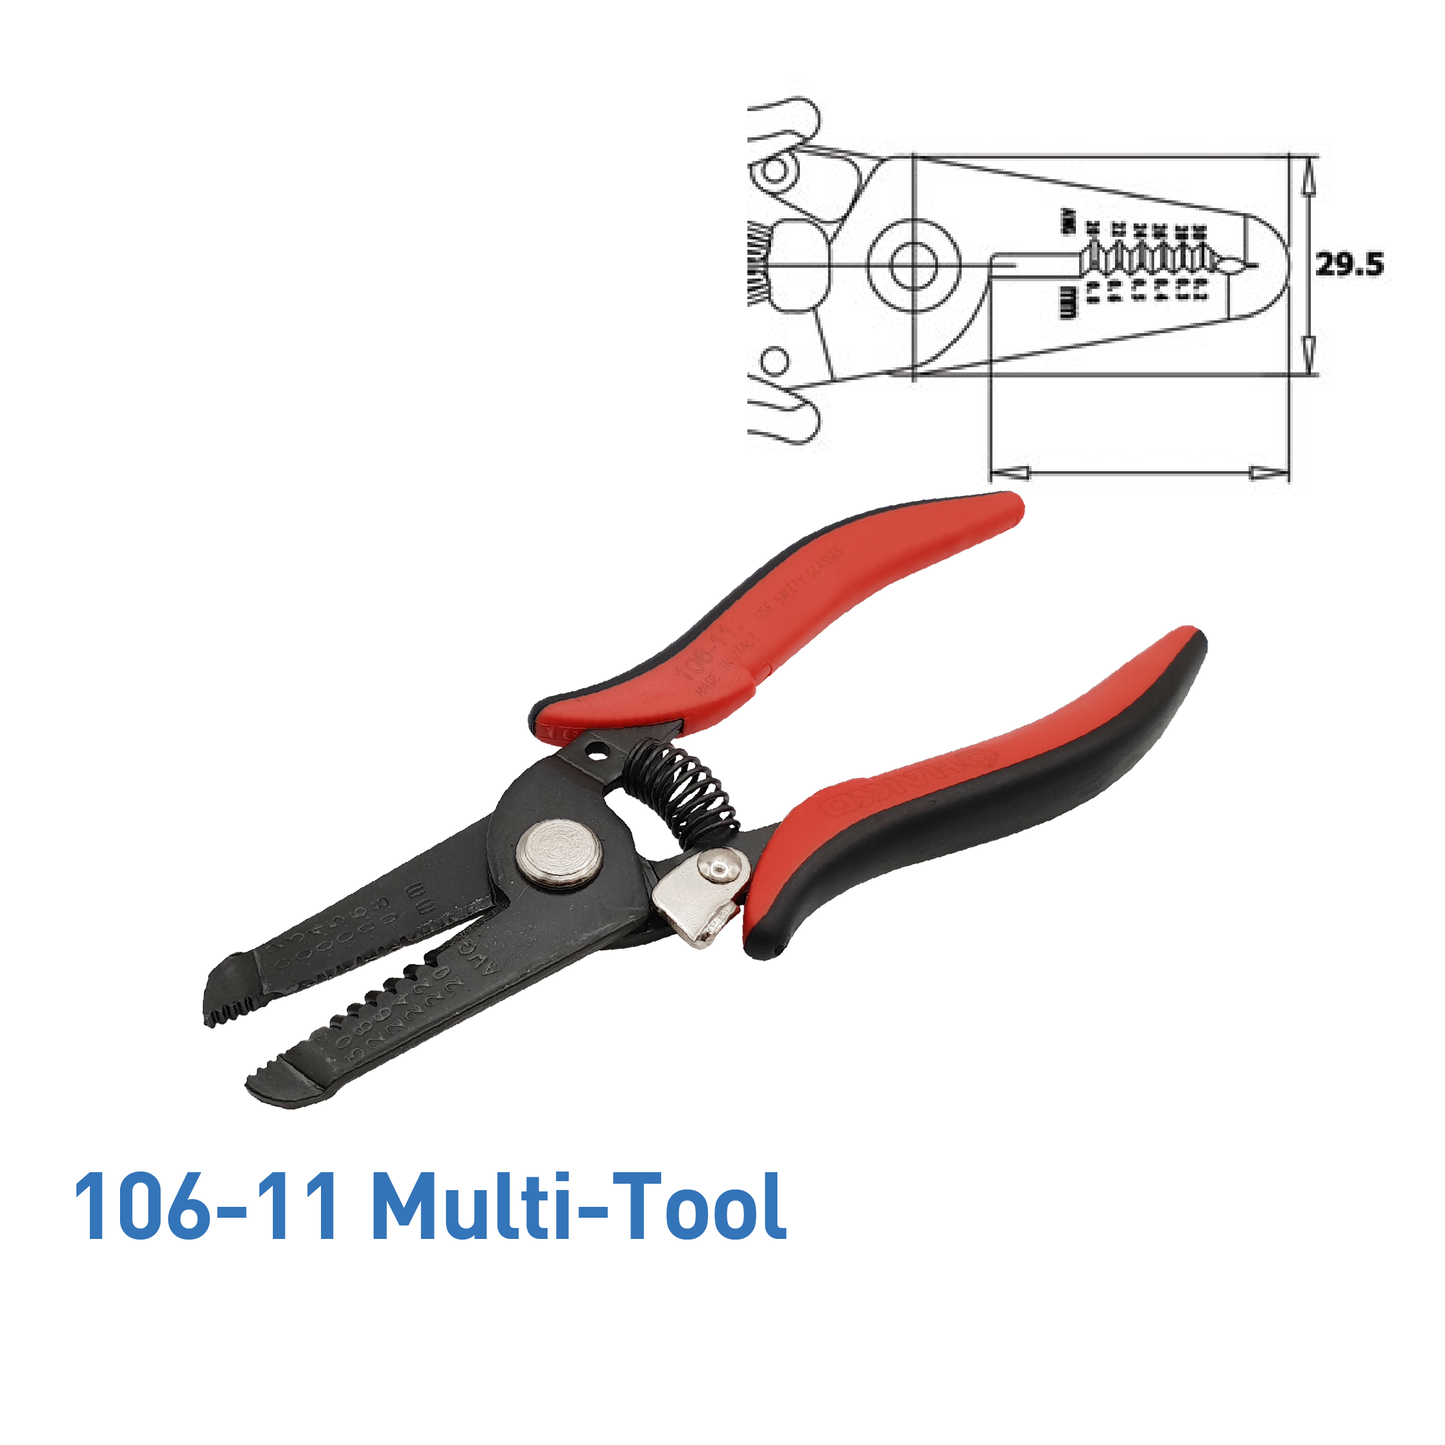 Hakko_ 106-11 Multi-Tool_ Cutters, Pliers, Multi-Tools_ Hakko Products